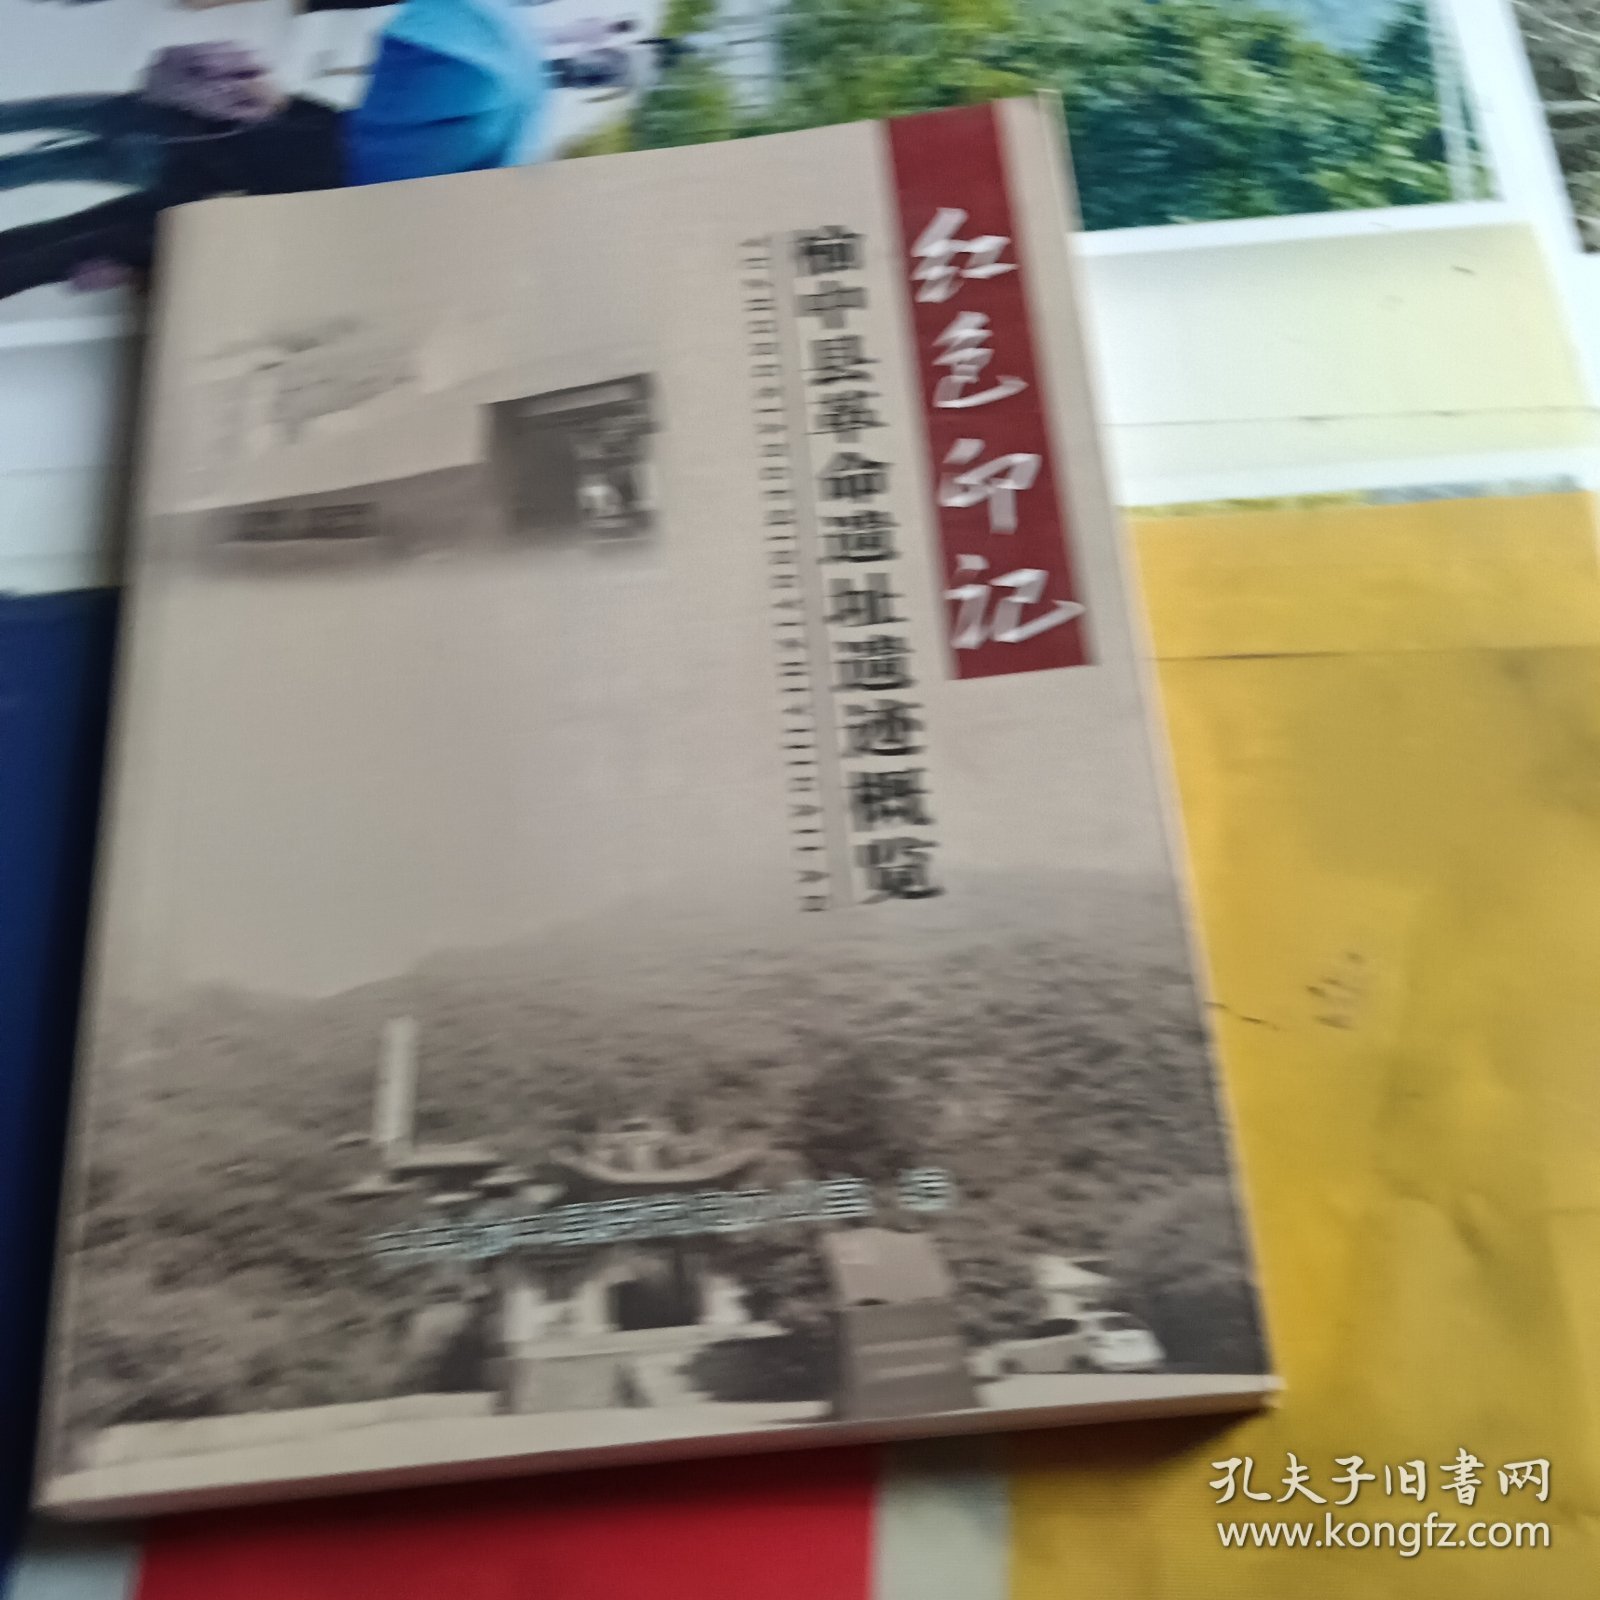 红色印记 榆中县革命遗址遗迹概览